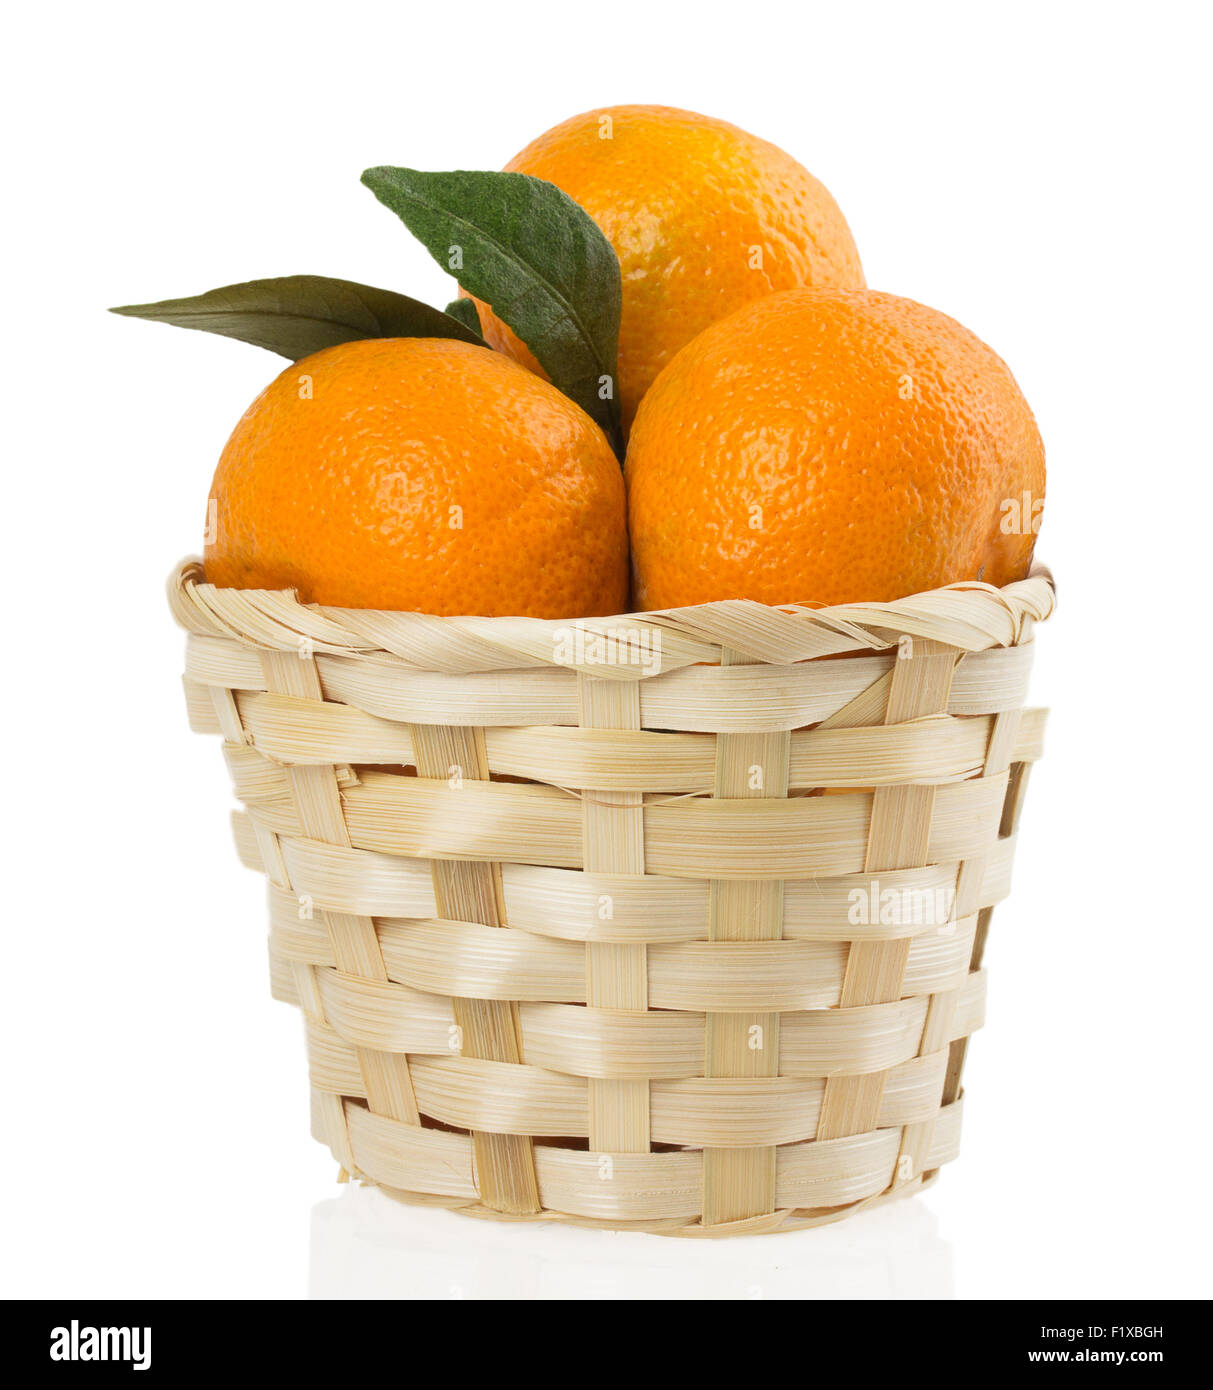 Mandarinen im Korb auf einem weißen Hintergrund. Stockfoto